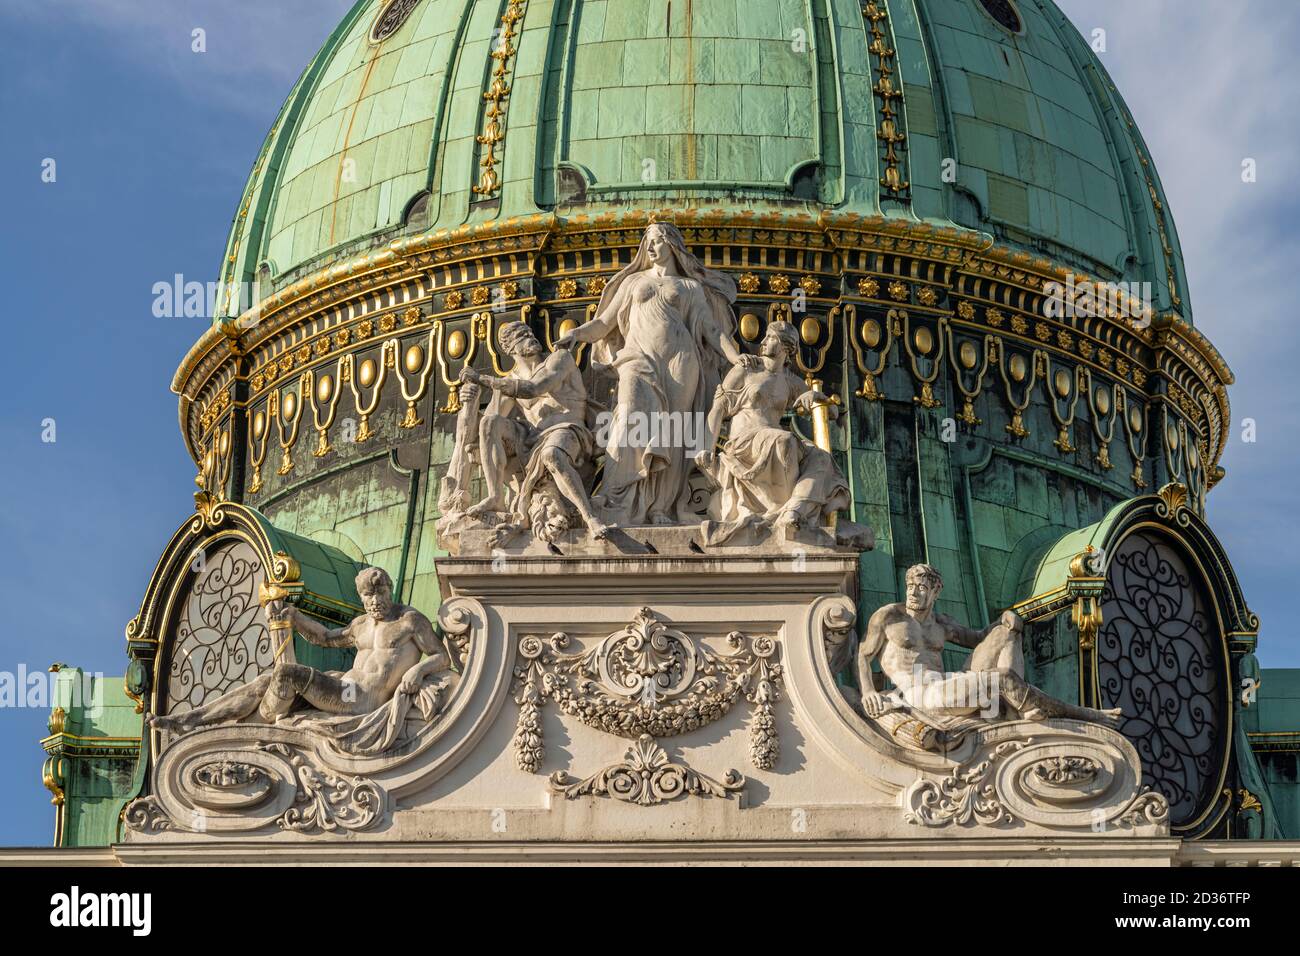 Kuppel des Michaelertrakt der Hofburg à Wien, Österreich, Europa | Dôme de l'aile Saint-Michel, Vienne, Autriche, Europe Banque D'Images